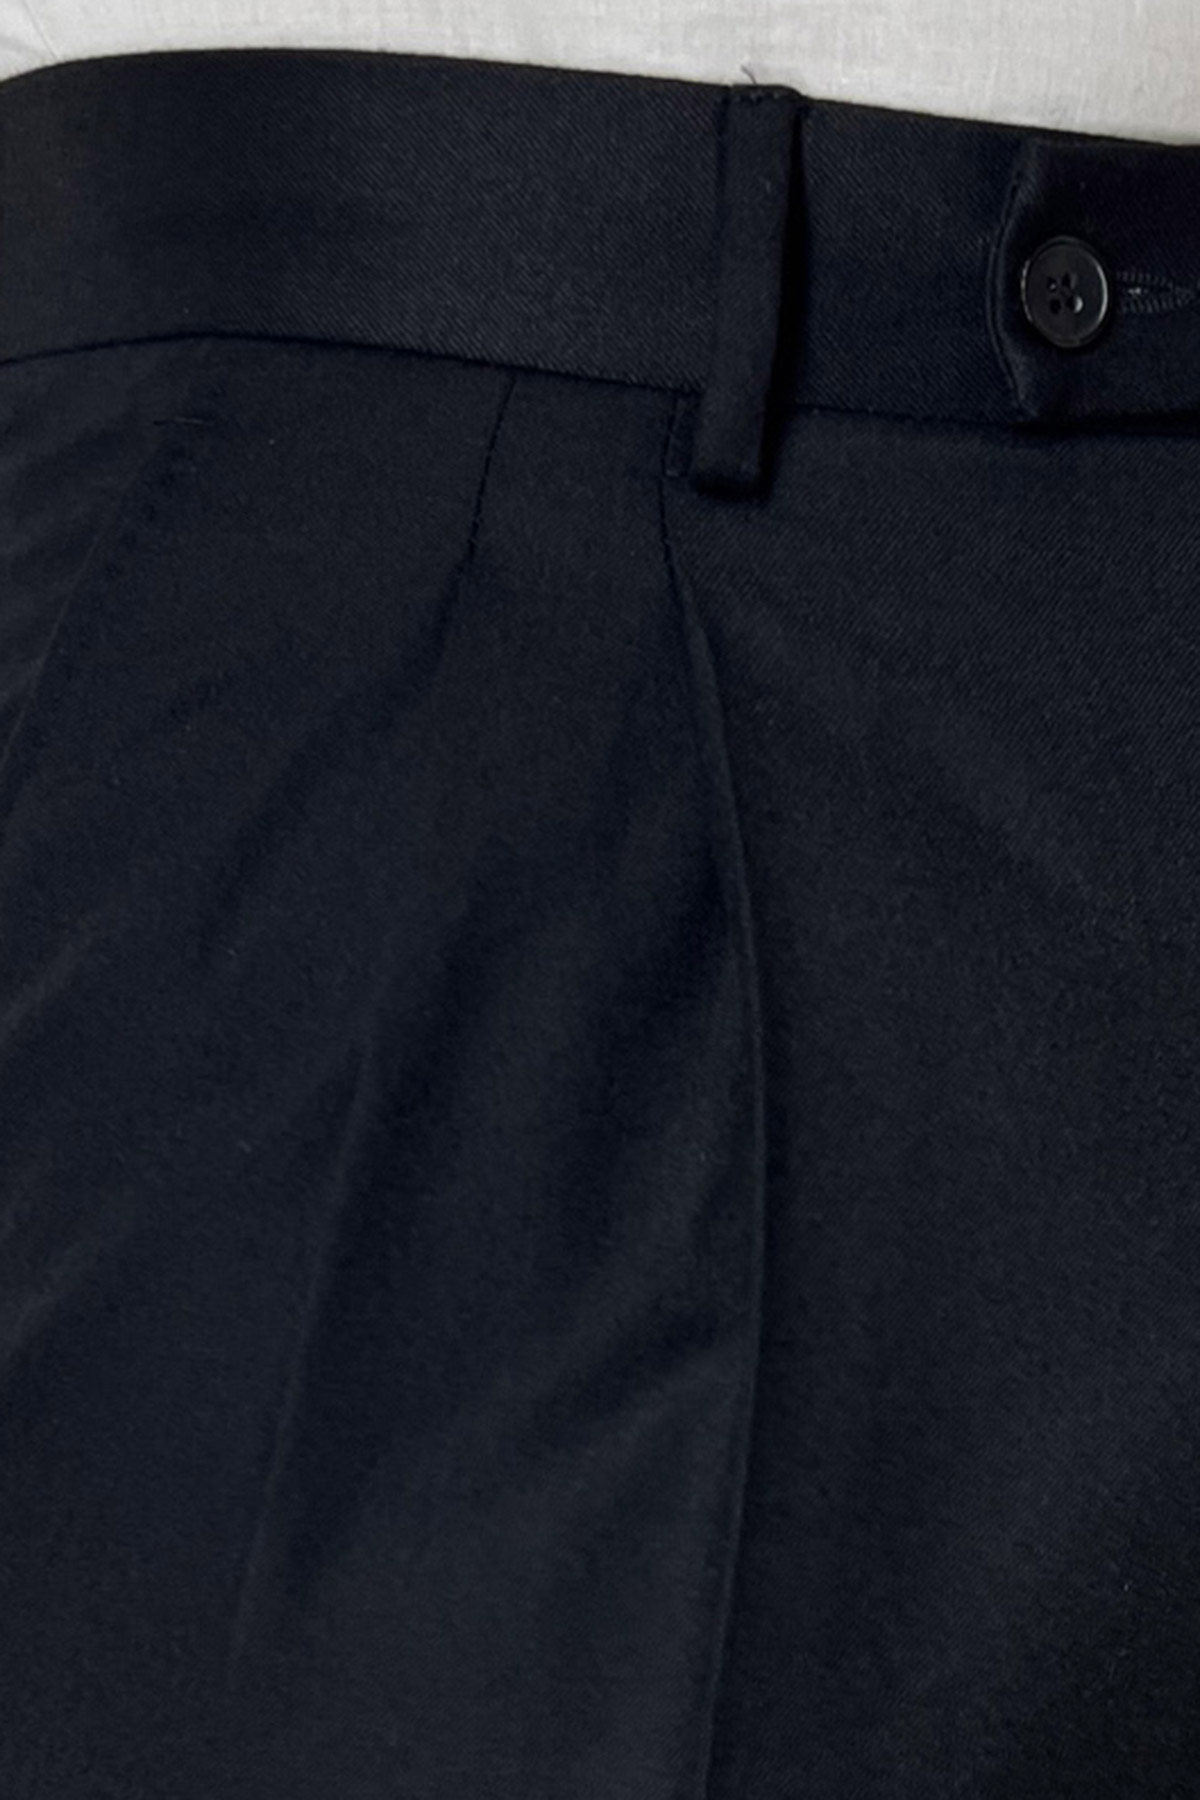 Pantalone uomo nero vita alta tasca america in lana flanella con doppia pinces Vitale Barberis Canonico